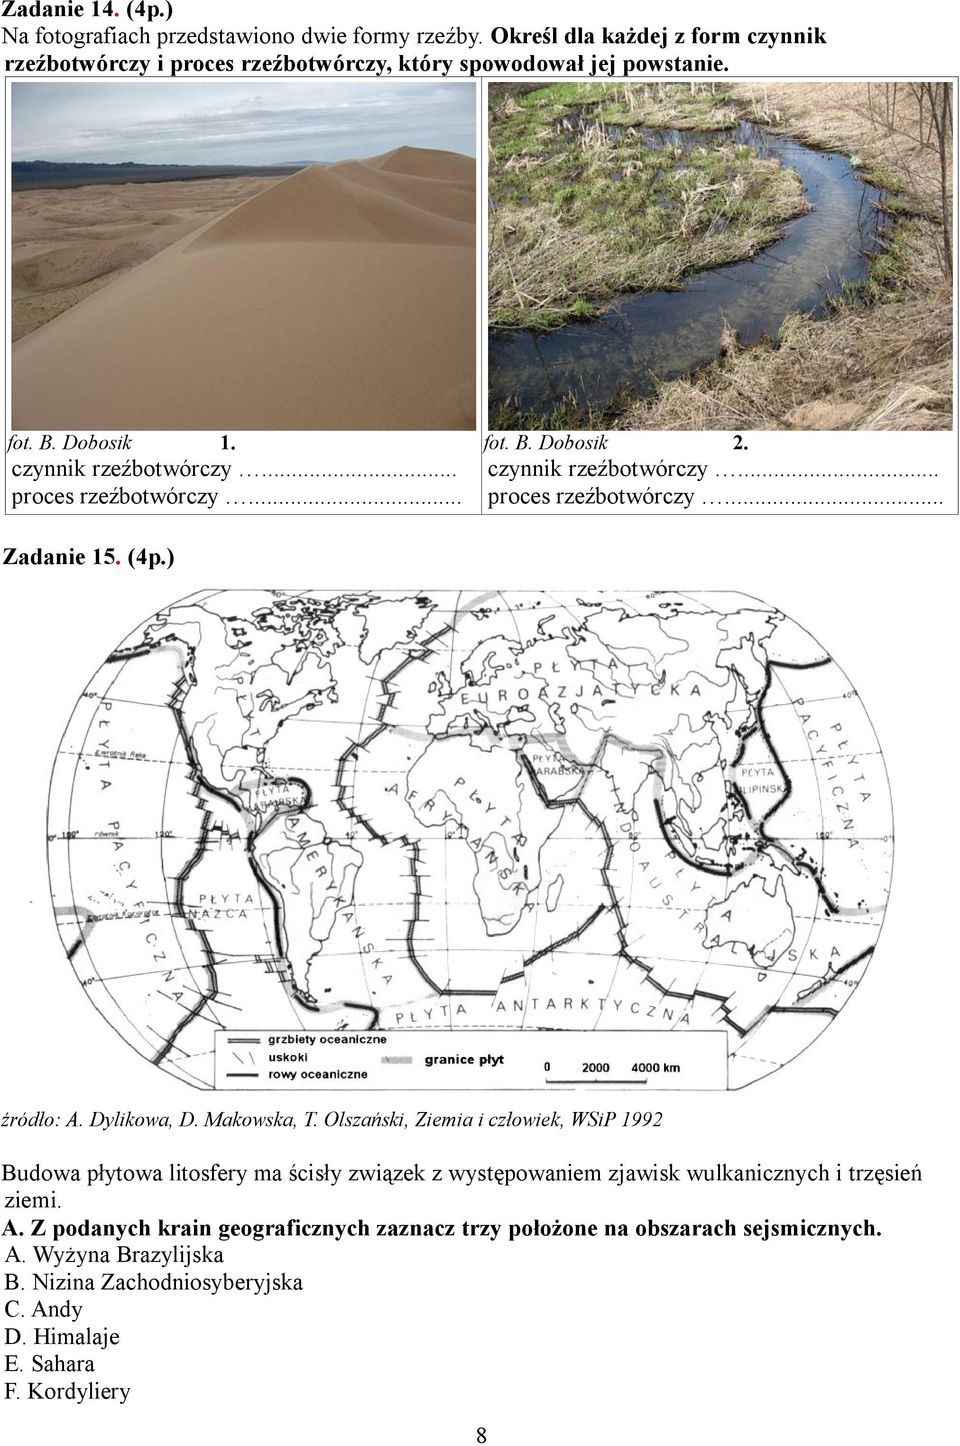 Dylikowa, D. Makowska, T. Olszański, Ziemia i człowiek, WSiP 1992 Budowa płytowa litosfery ma ścisły związek z występowaniem zjawisk wulkanicznych i trzęsień ziemi. A.